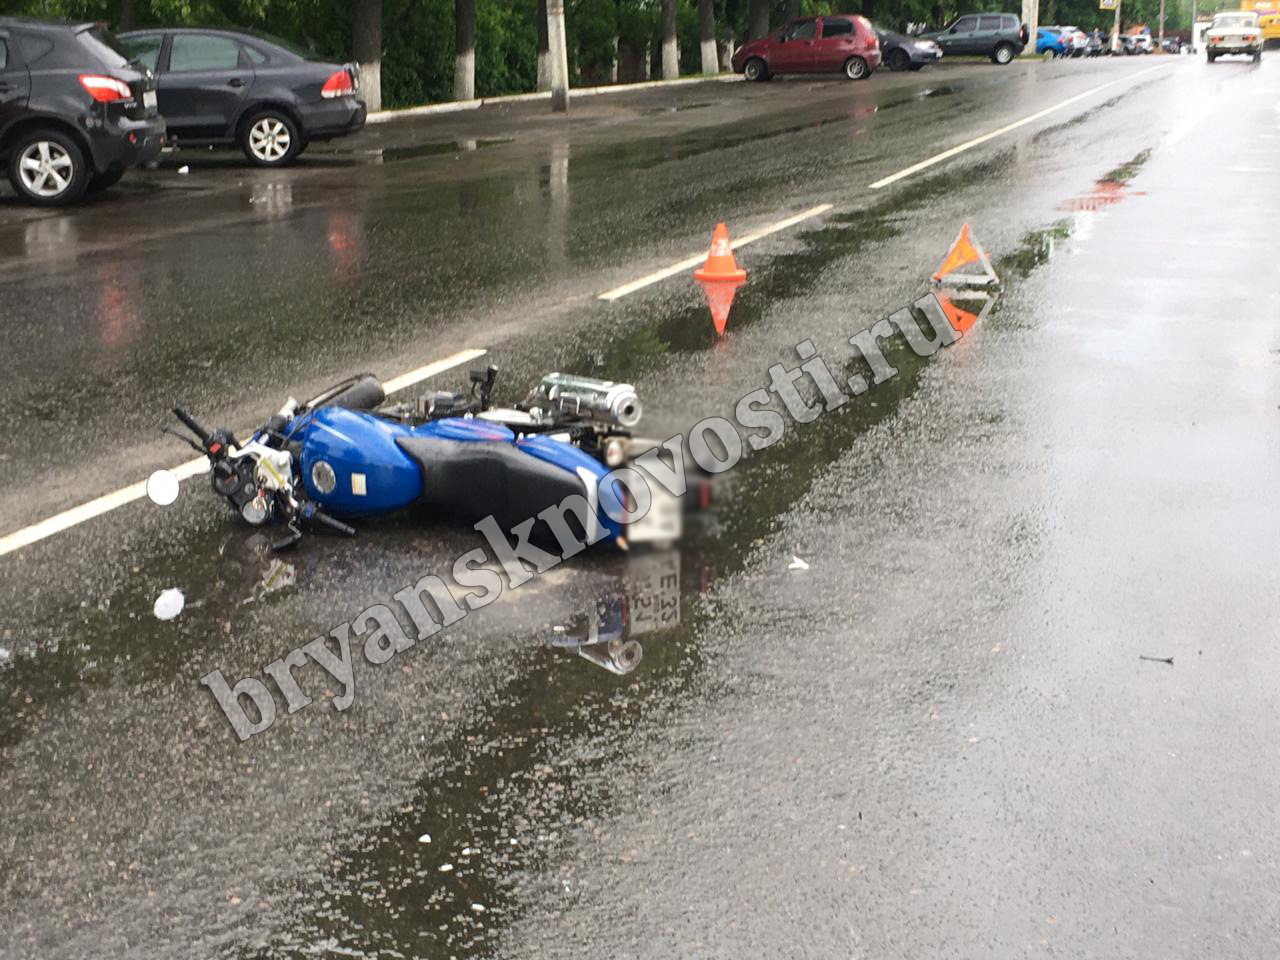 Мотоциклист из Новозыбкова, попав в аварию из-за забрызганного шлема, получил множественные травмы